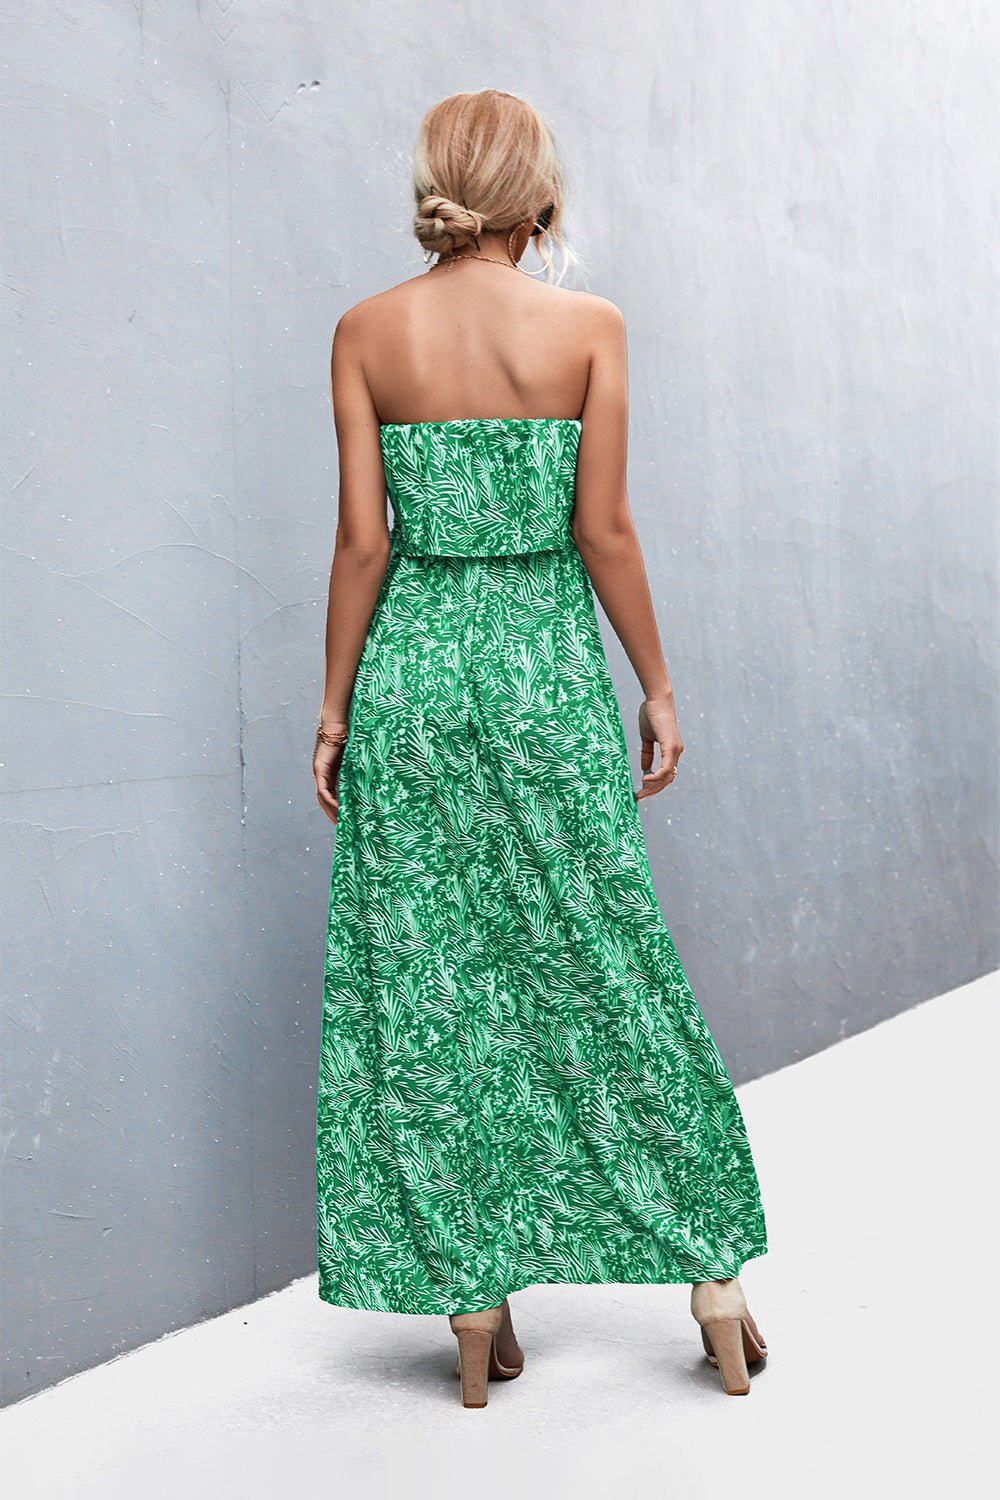 Strapless Floral Print Maxi Dress - Global Village Kailua Boutique